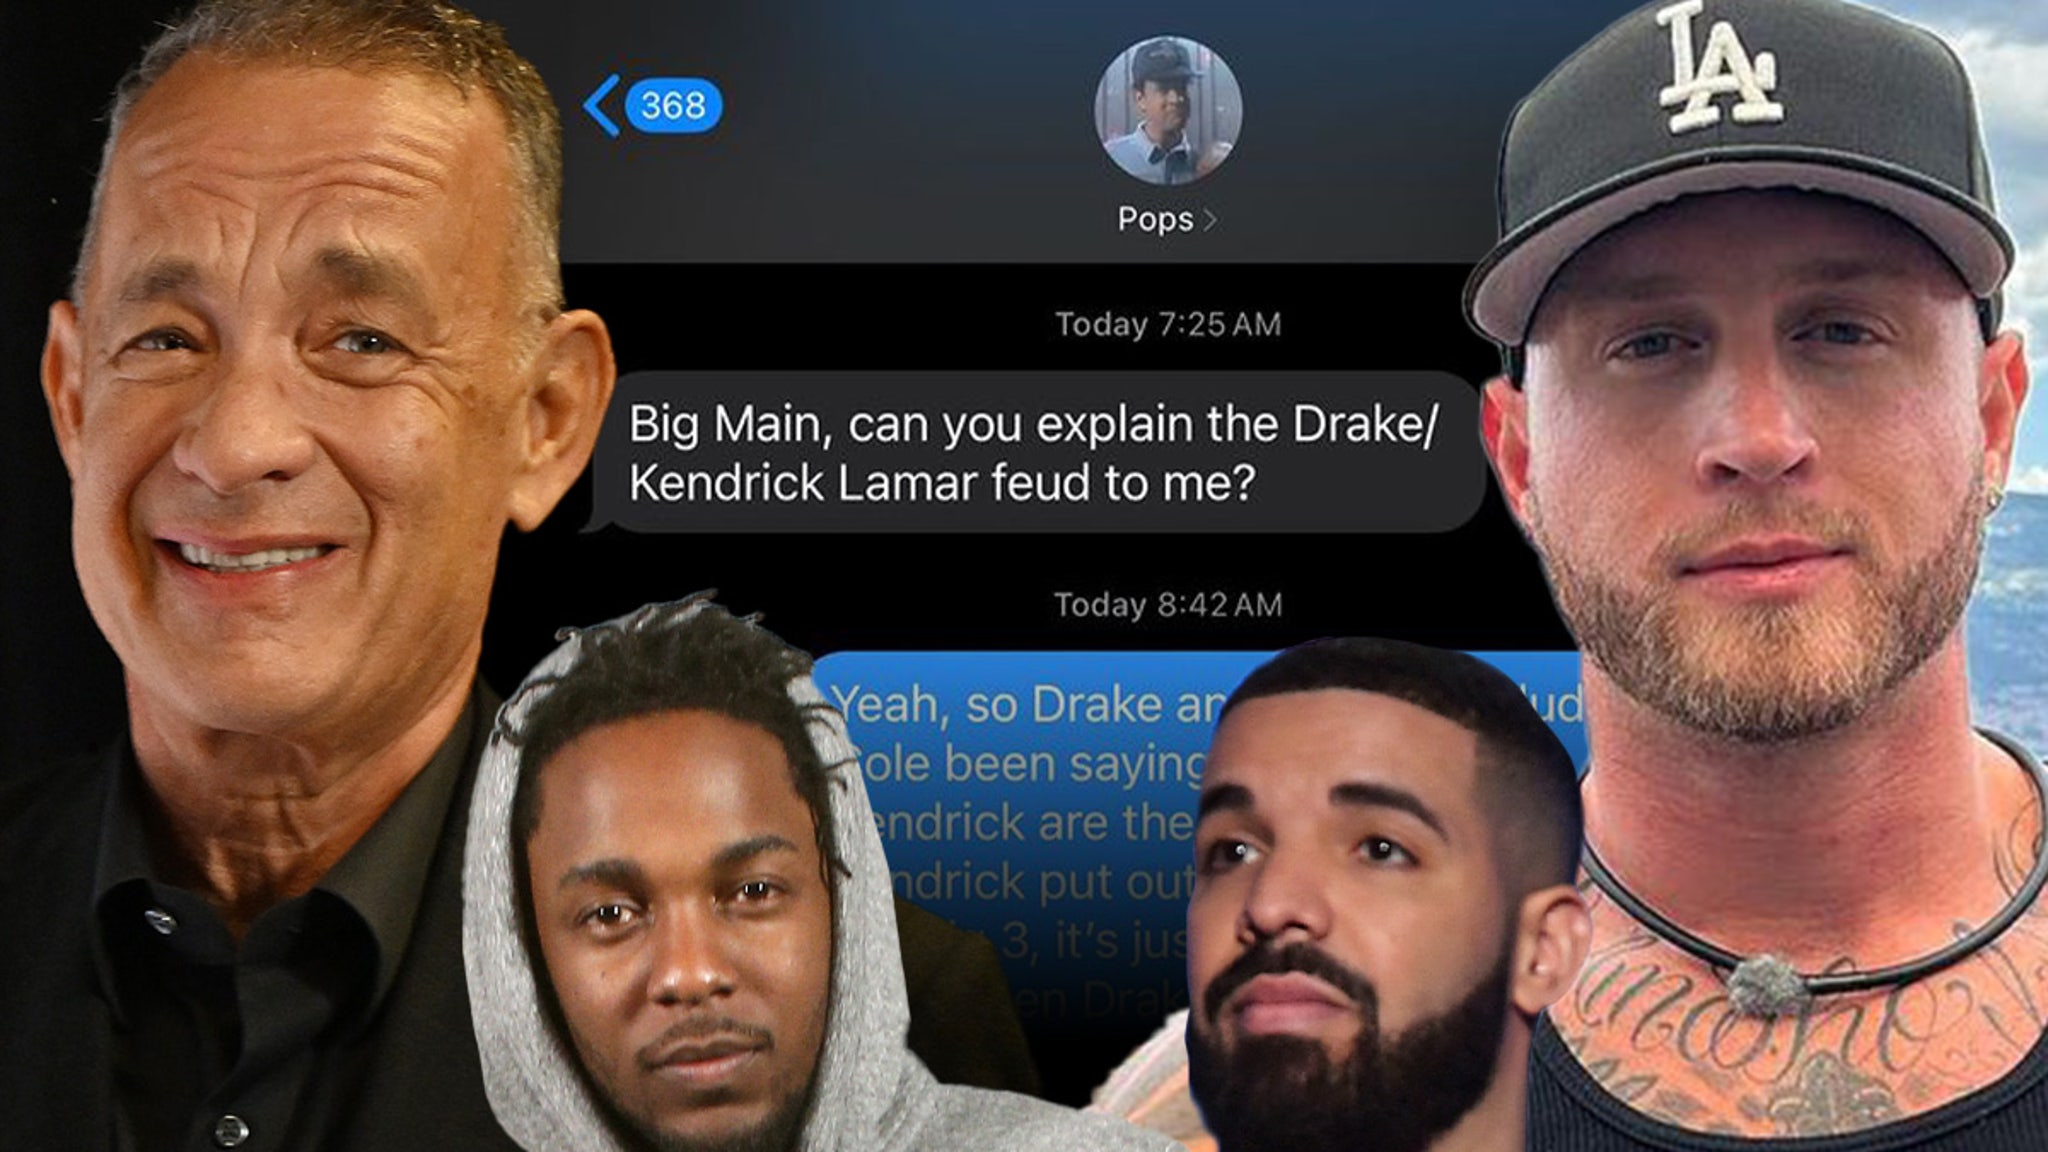 Chet, el hijo de Tom Hanks, le explica el problema de Kendrick y Drake por mensaje de texto